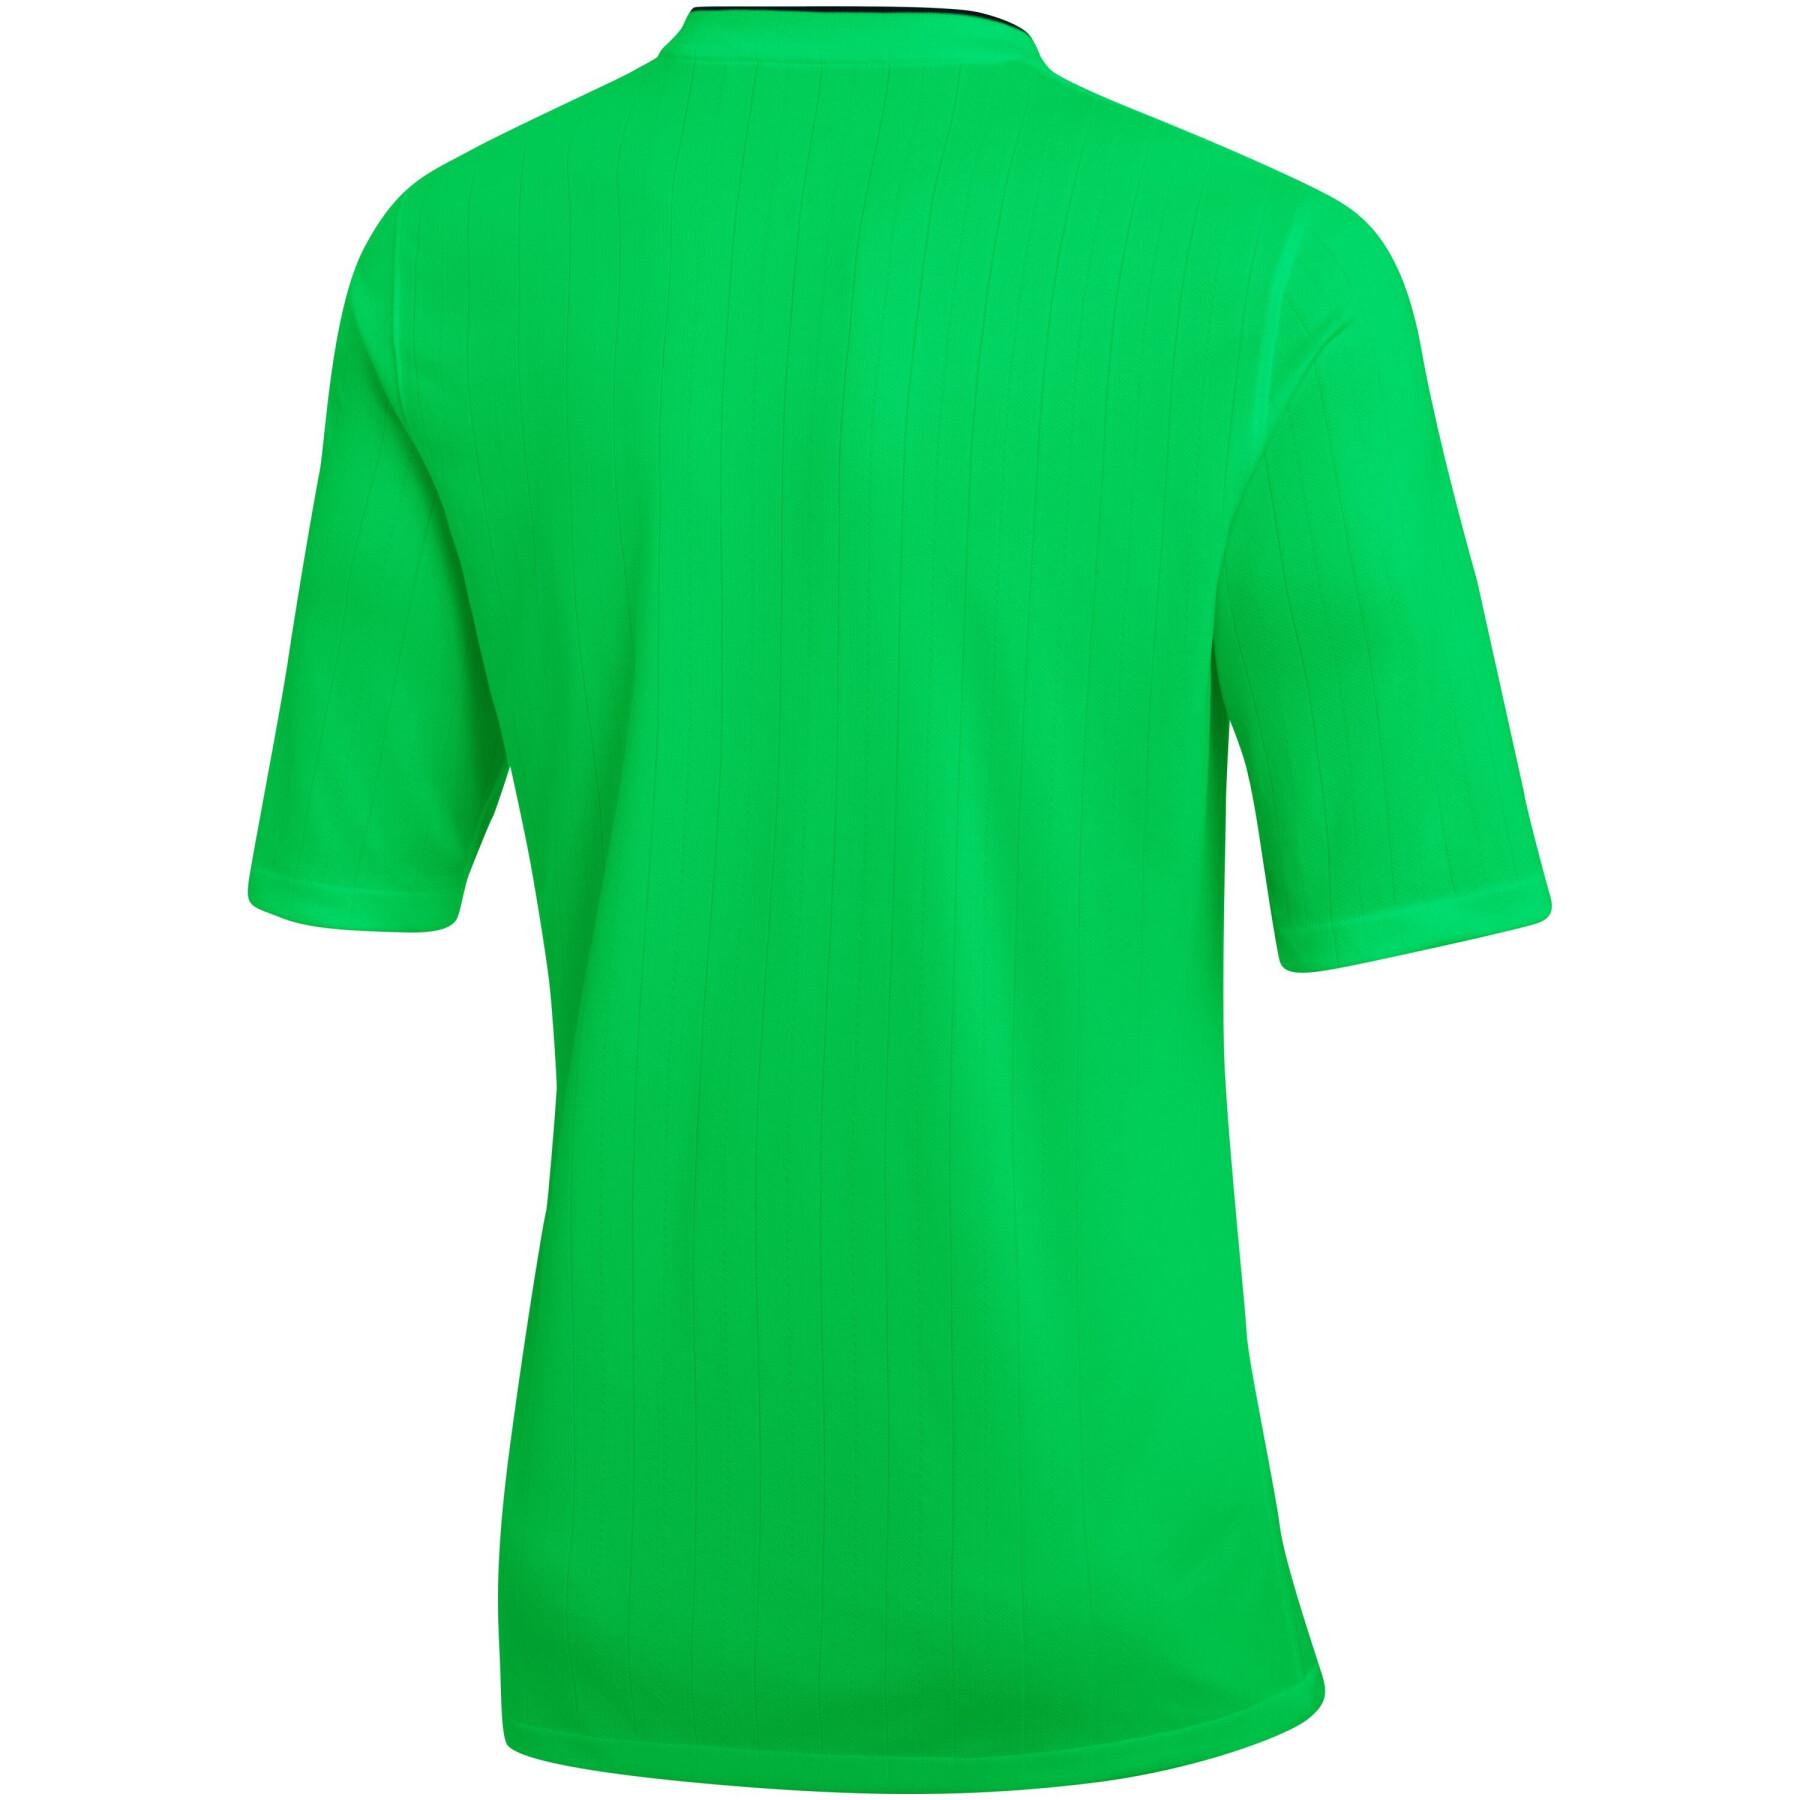 Koszulka Nike Dri-Fit REF 2